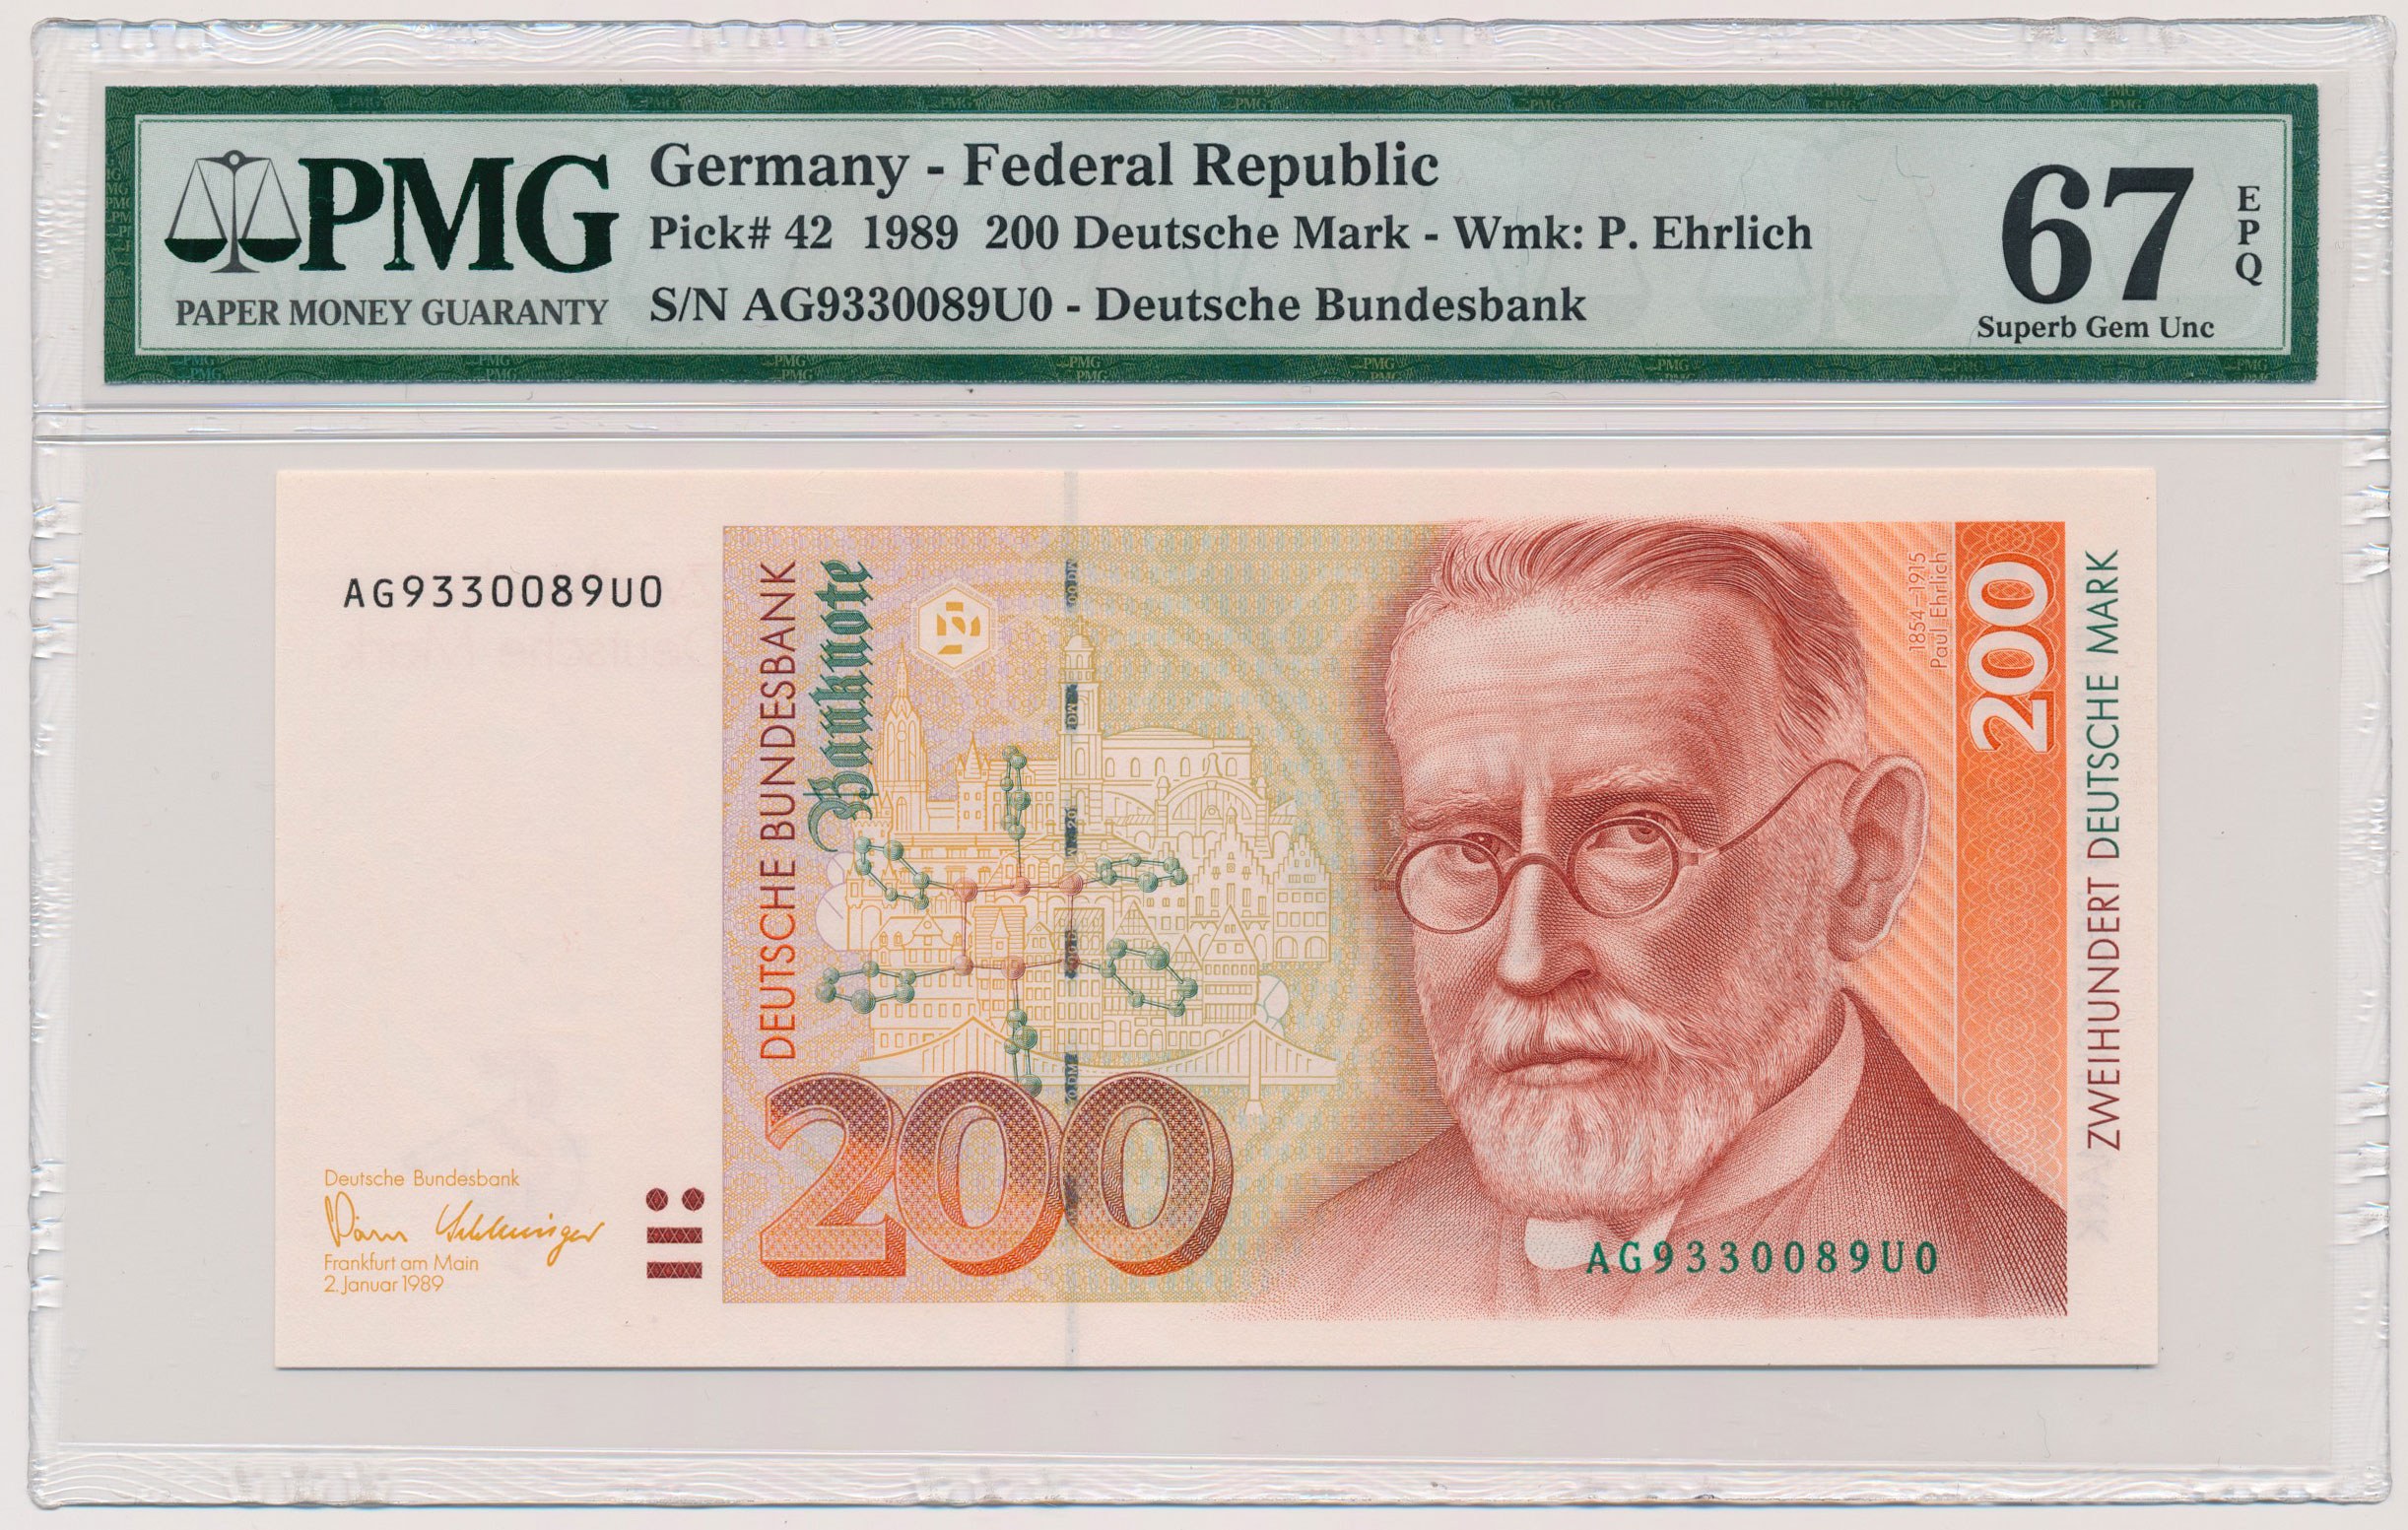 Купюра марка. Немецкая марка. Деньги Германии. Немецкие марки деньги. Валюта Германии марка.